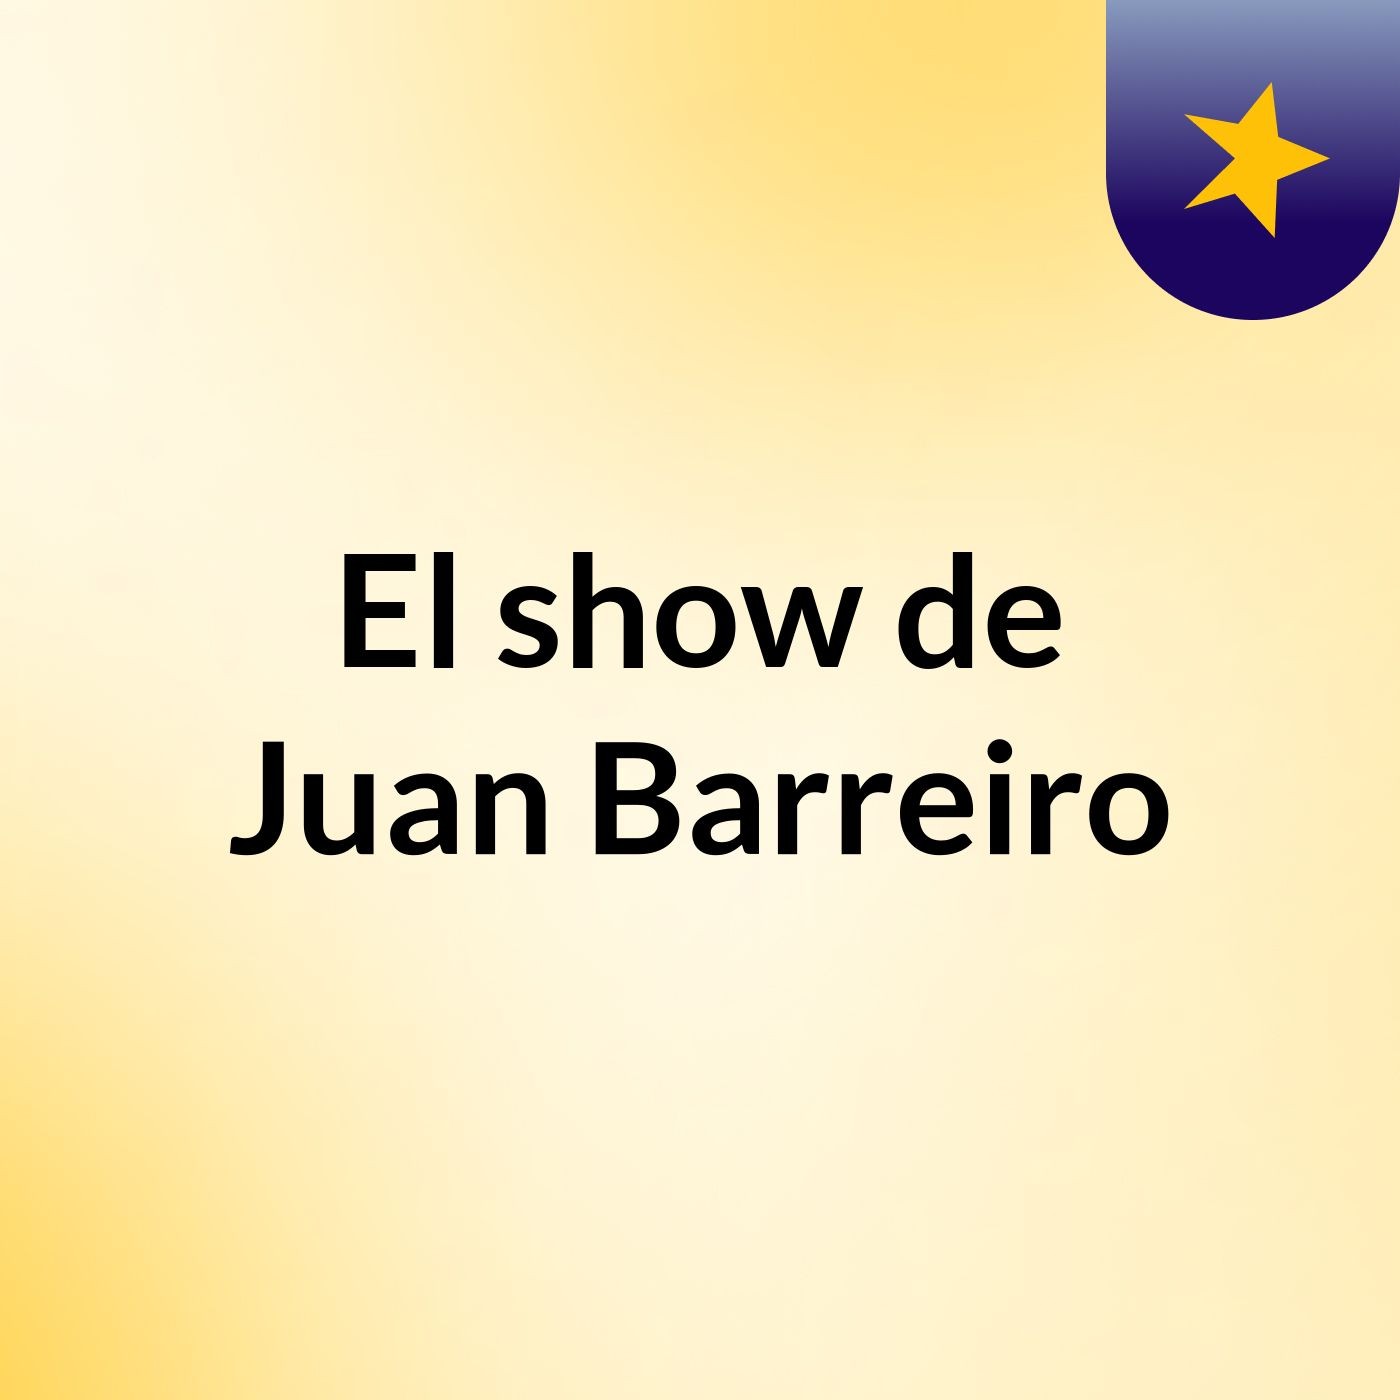 El show de Juan Barreiro